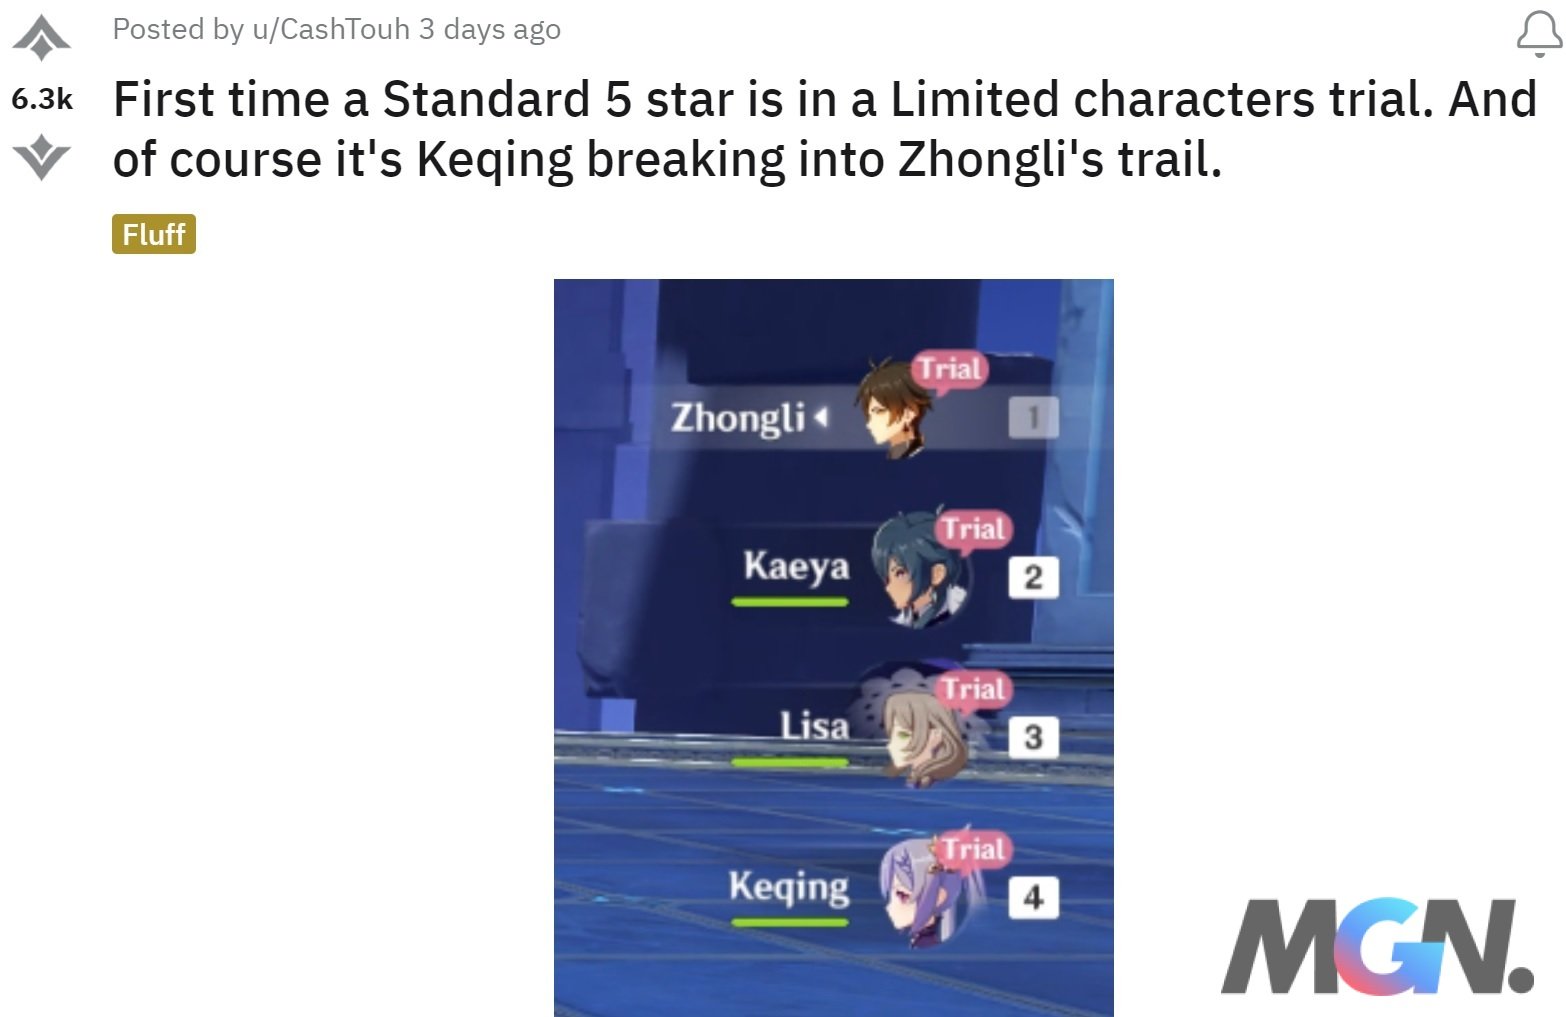 Keqing appeared in Zhongli's trial mode in Genshin Impact 4.0